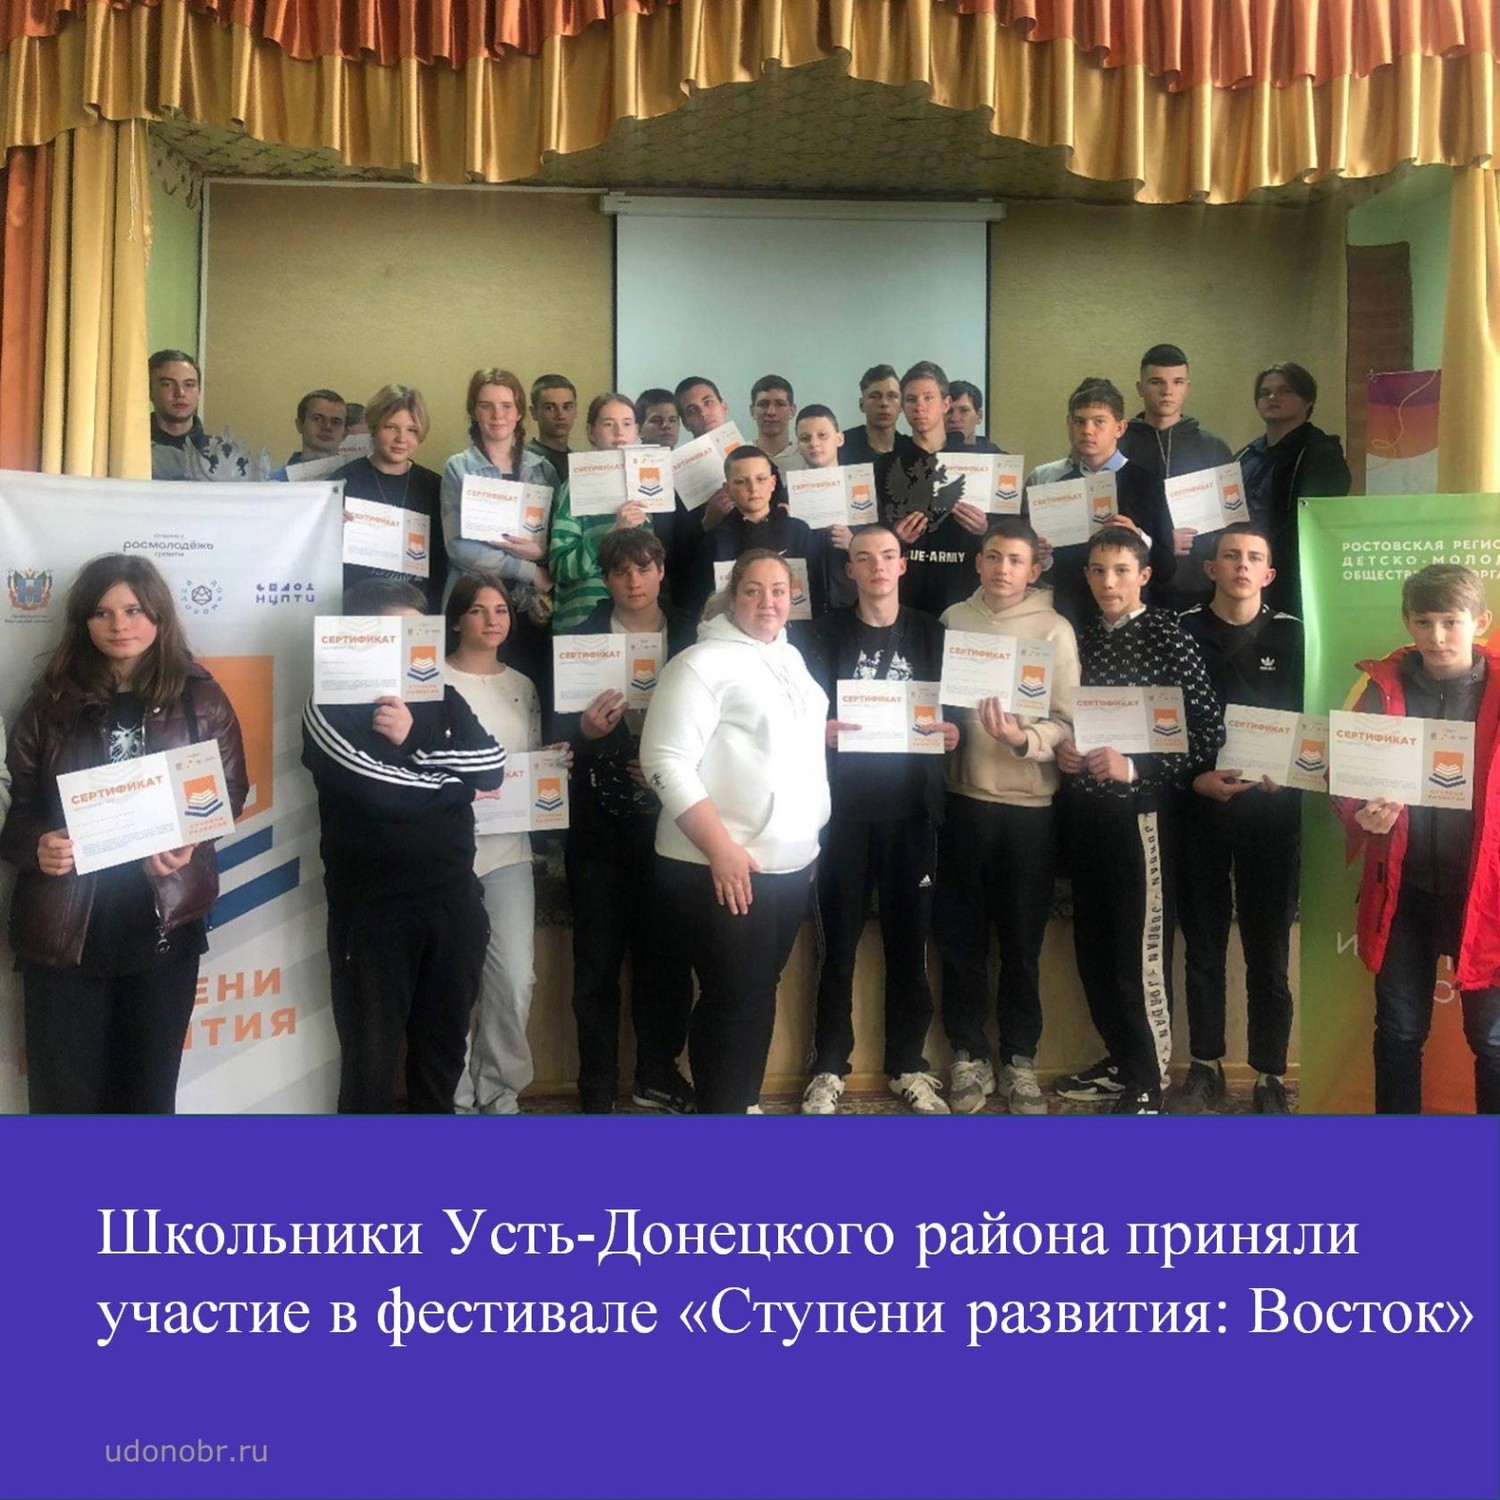 Школьники Усть-Донецкого района приняли участие в фестивале «Ступени развития: Восток»